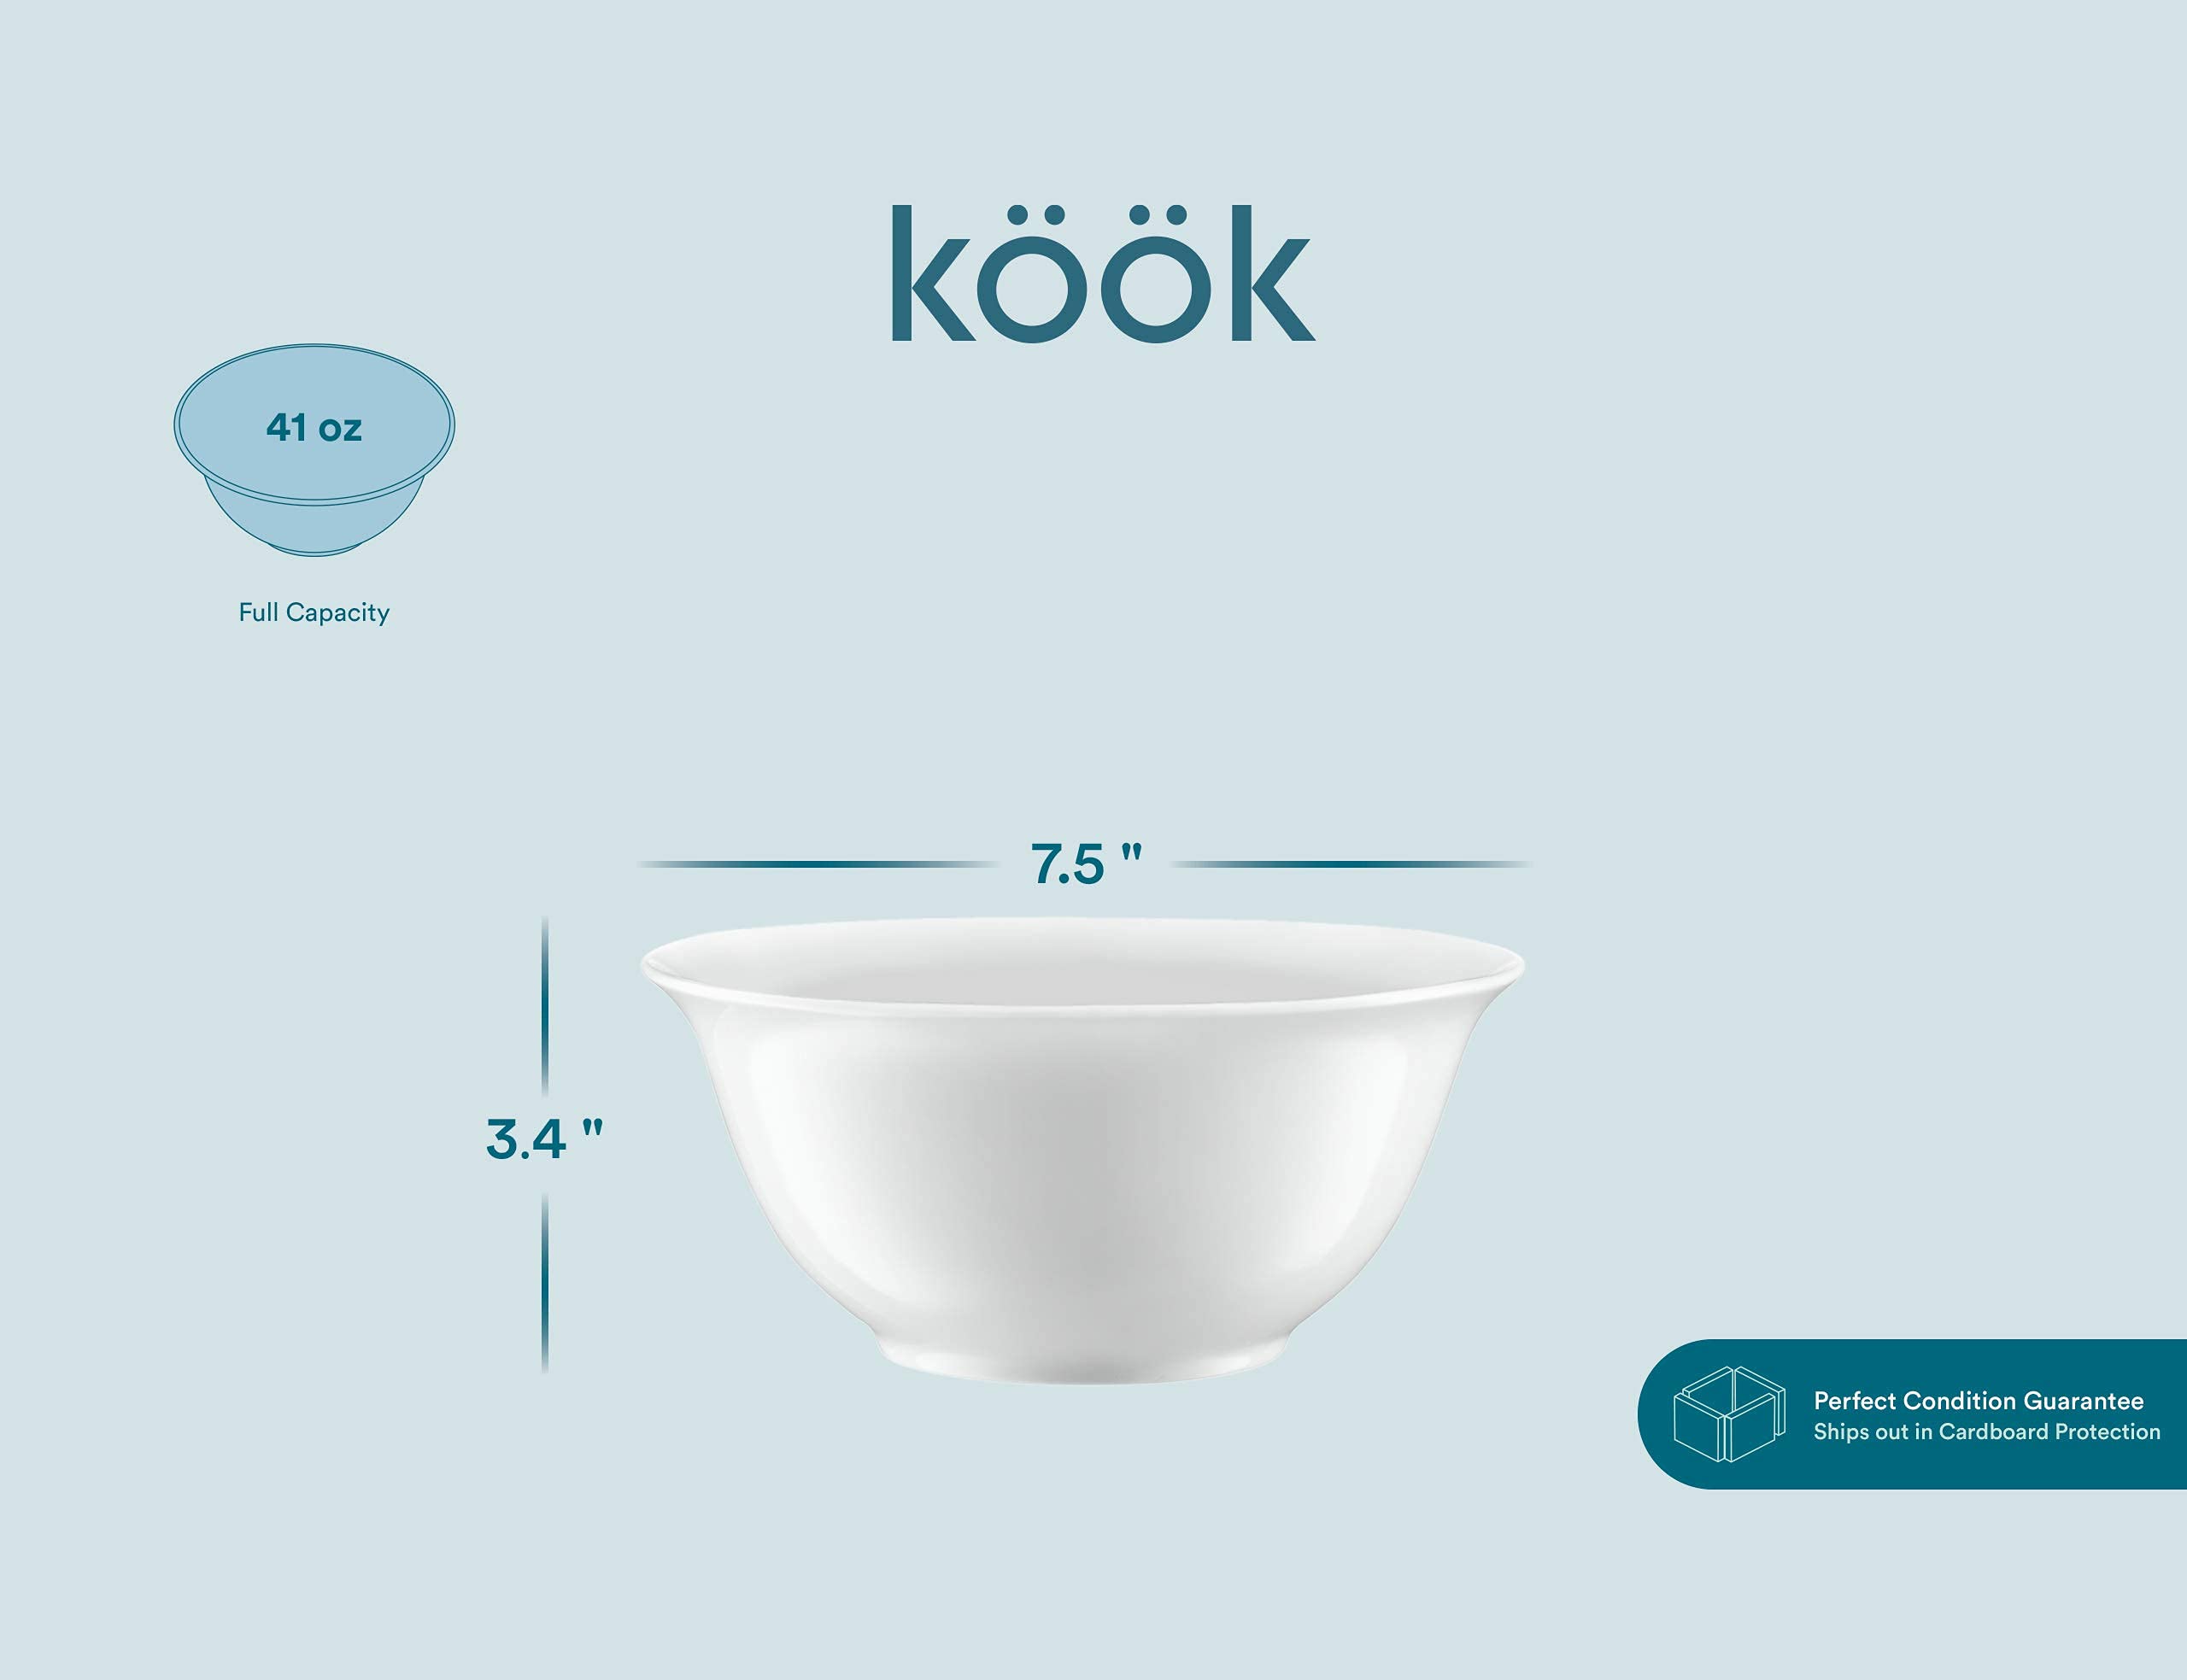 KooK 41 Oz Large Deep Bowls, Ceramic White Bowl for Noodle, Ramen, Pasta, Cereal, Fruit Porcelain kitchen, Microwave and Dishwasher Safe, 7.5 Inches, Set of 4,